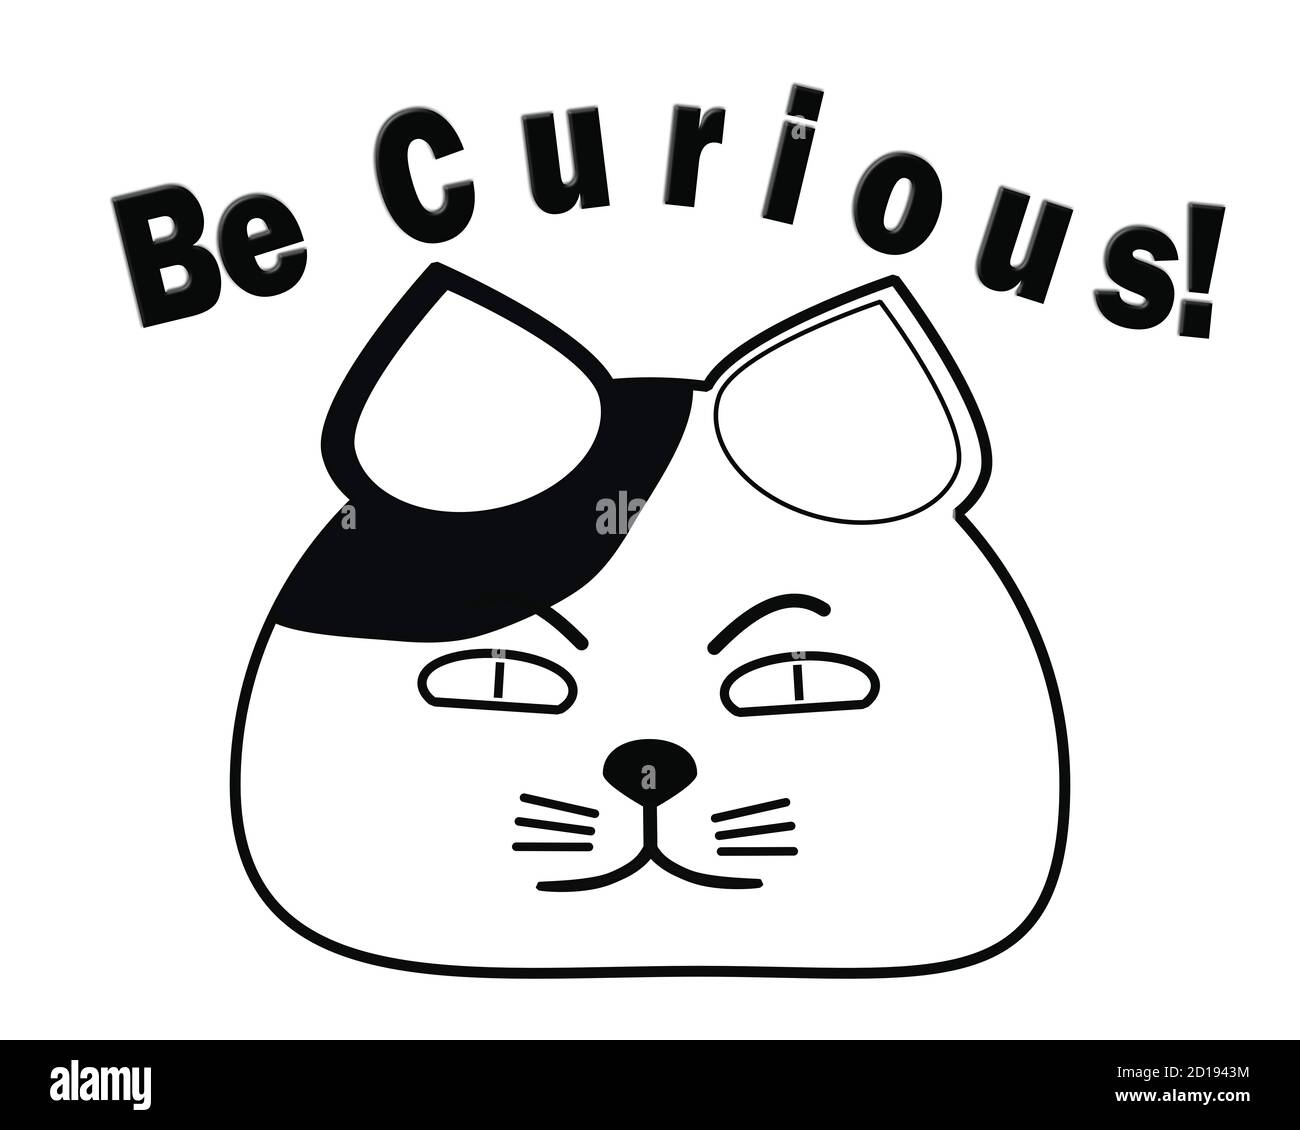 Gato curioso - la ilustración del concepto de la educación representa gato gordo con curiosidad insaciable para aprender. Foto de stock